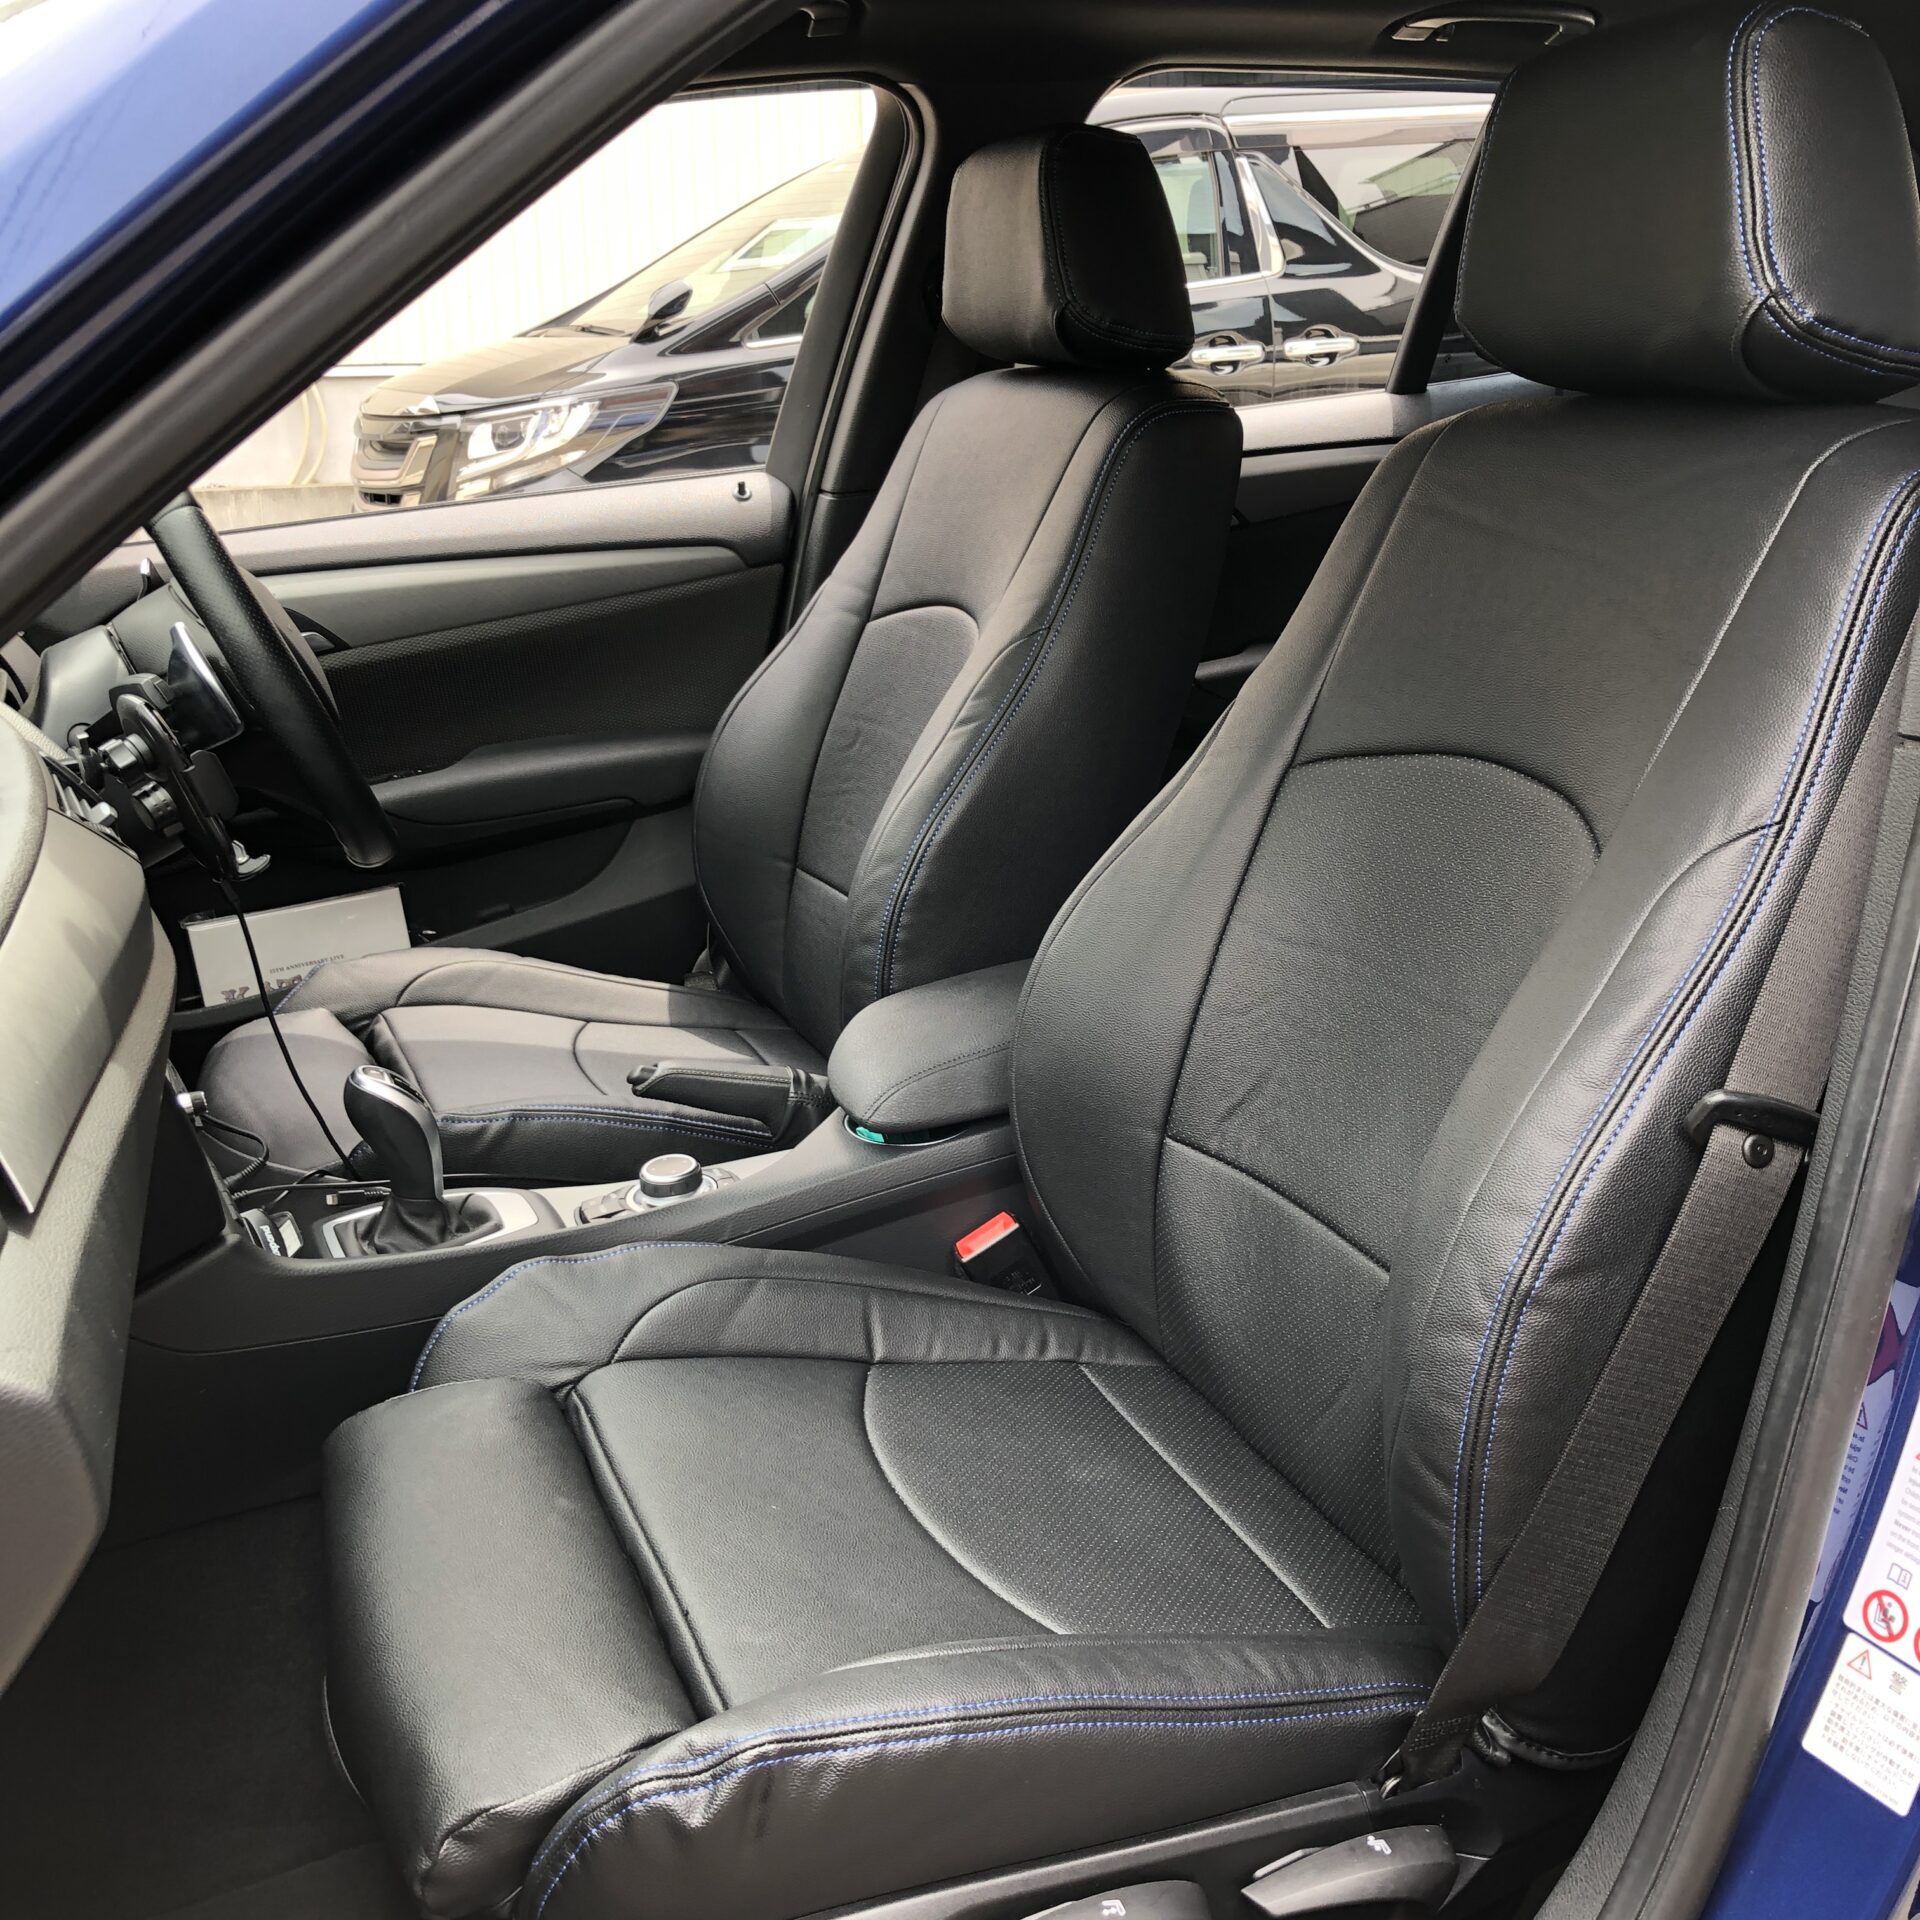 【装着写真】BMW X1 Refinad Leather Deluxe Series シートカバー [品番:BM0190-02]